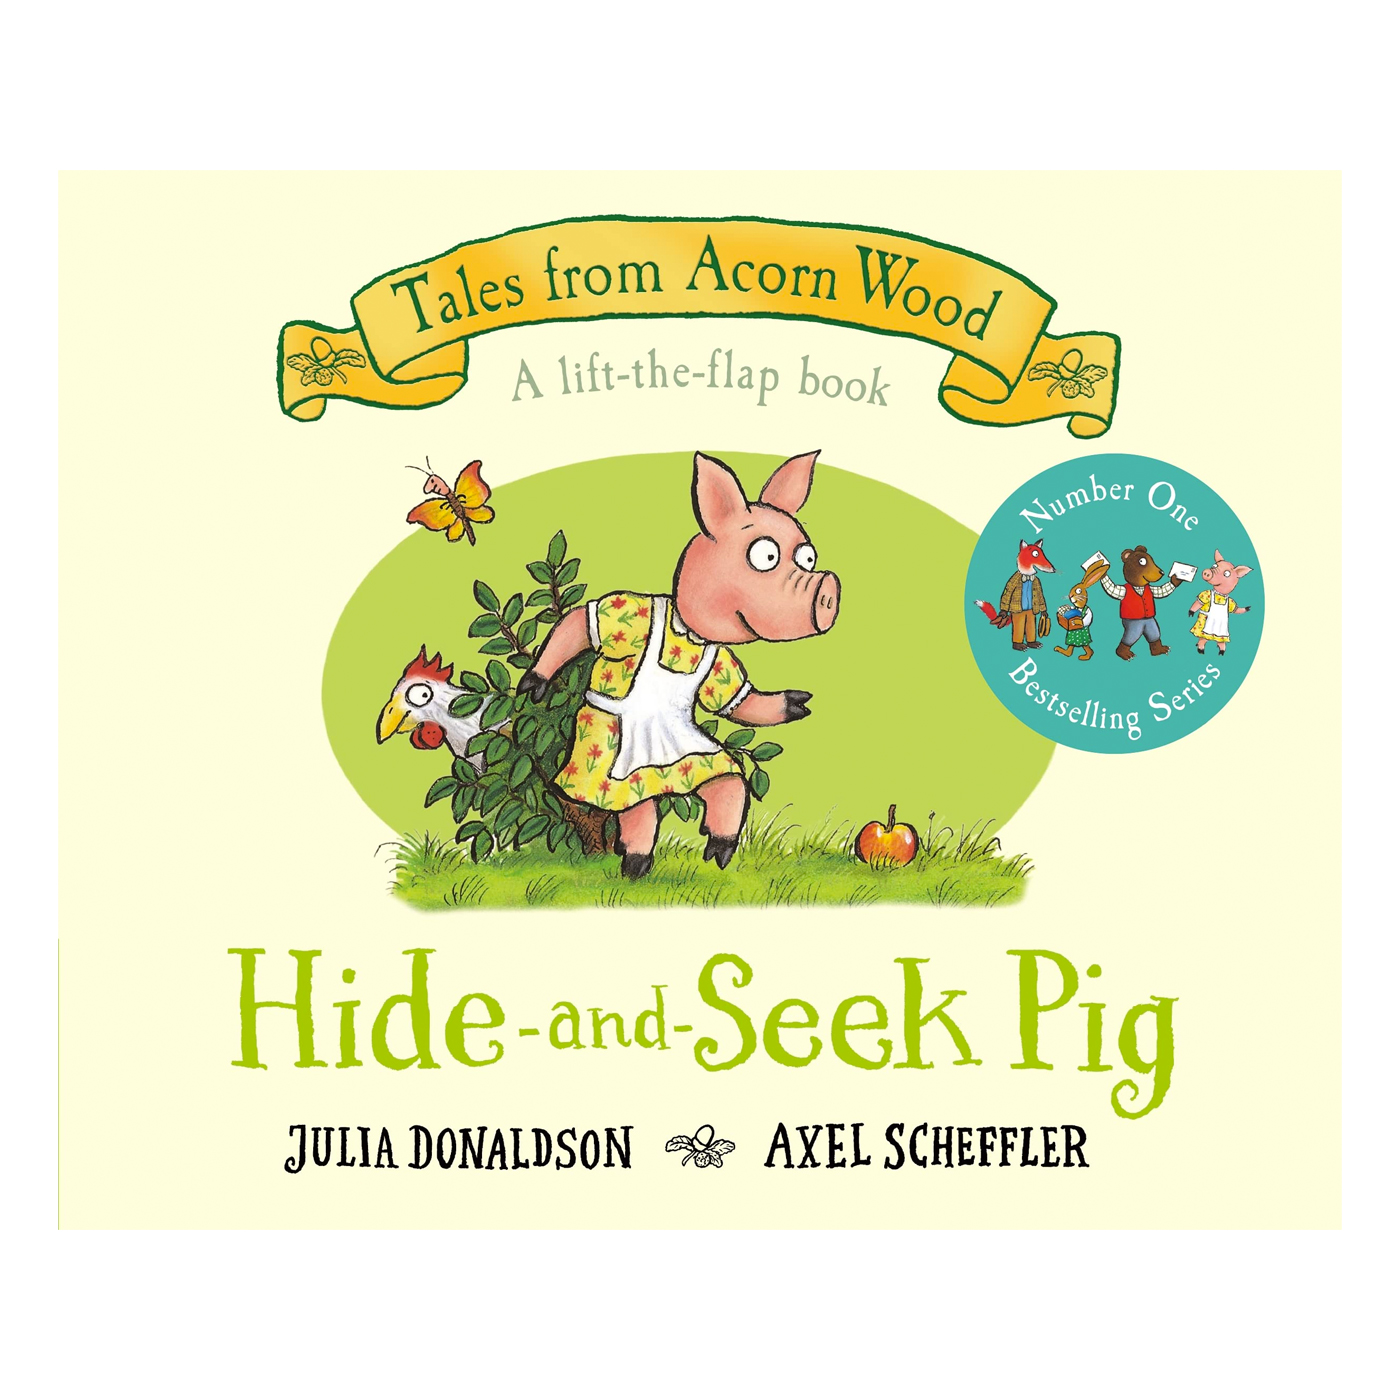  Hide-and-Seek Pig